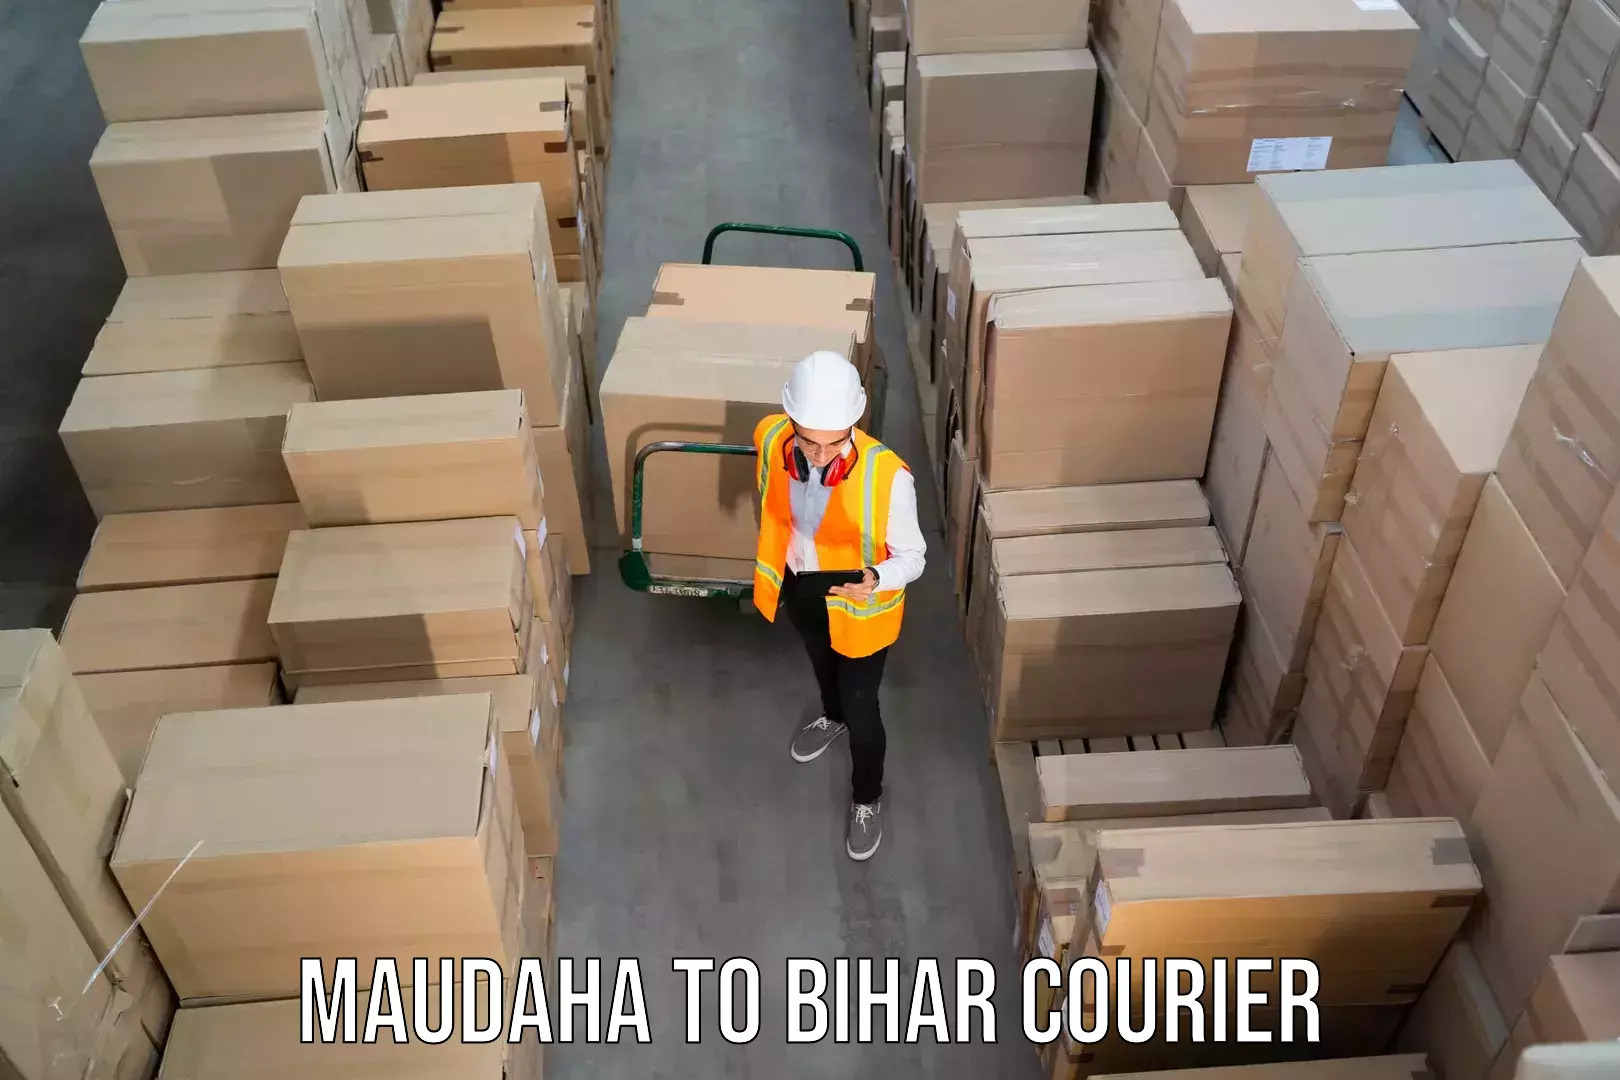 User-friendly courier app Maudaha to Mohiuddin Nagar